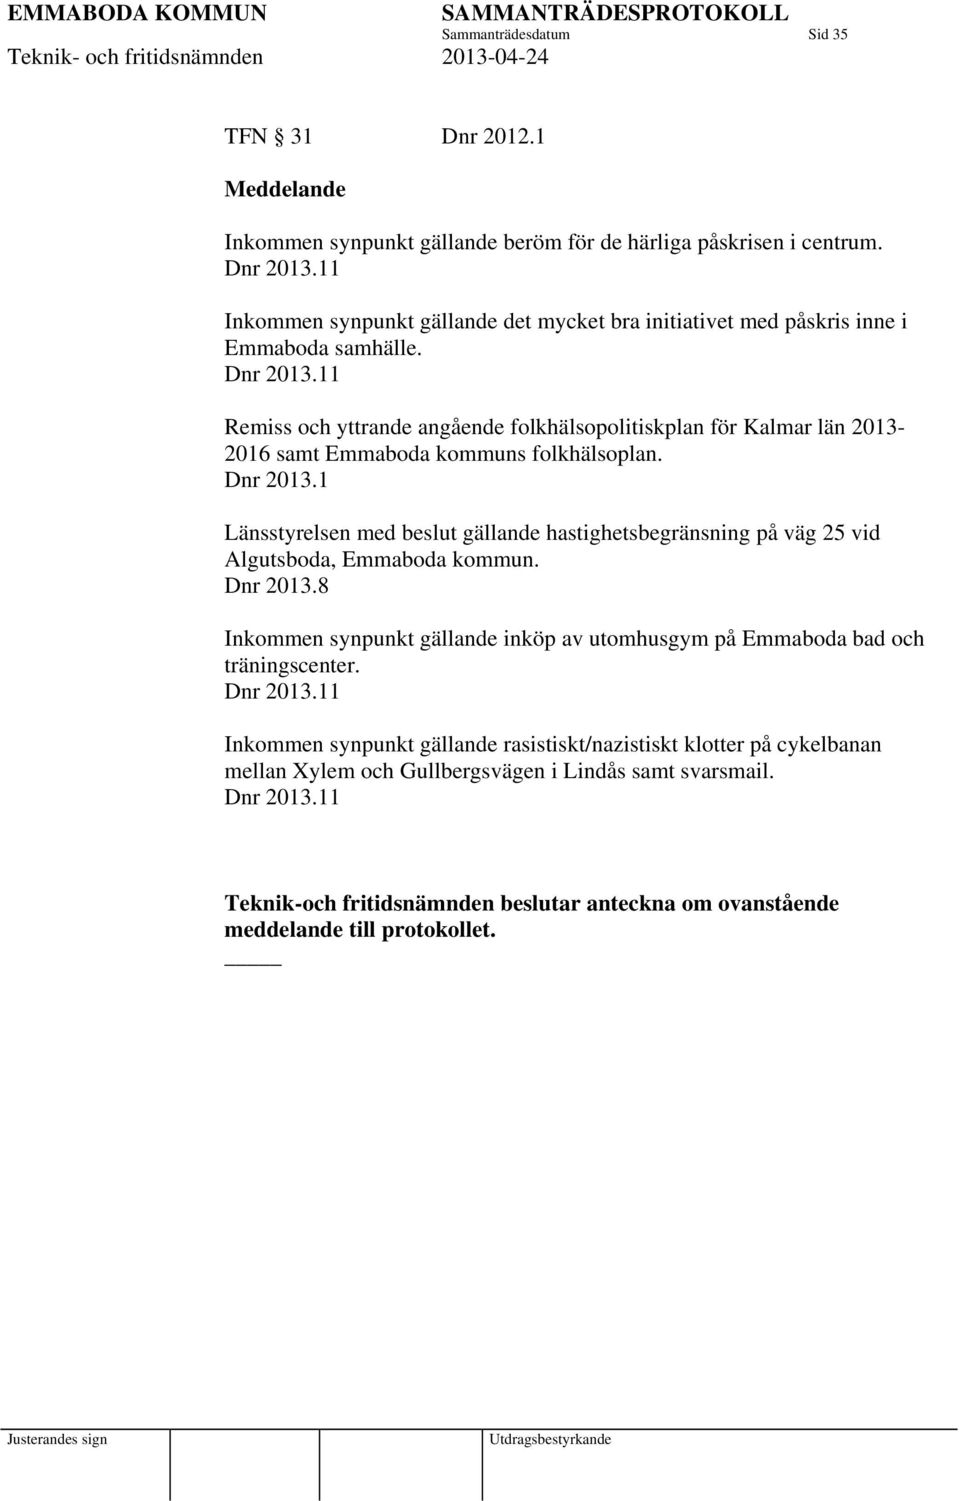 11 Remiss och yttrande angående folkhälsopolitiskplan för Kalmar län 2013-2016 samt Emmaboda kommuns folkhälsoplan. Dnr 2013.